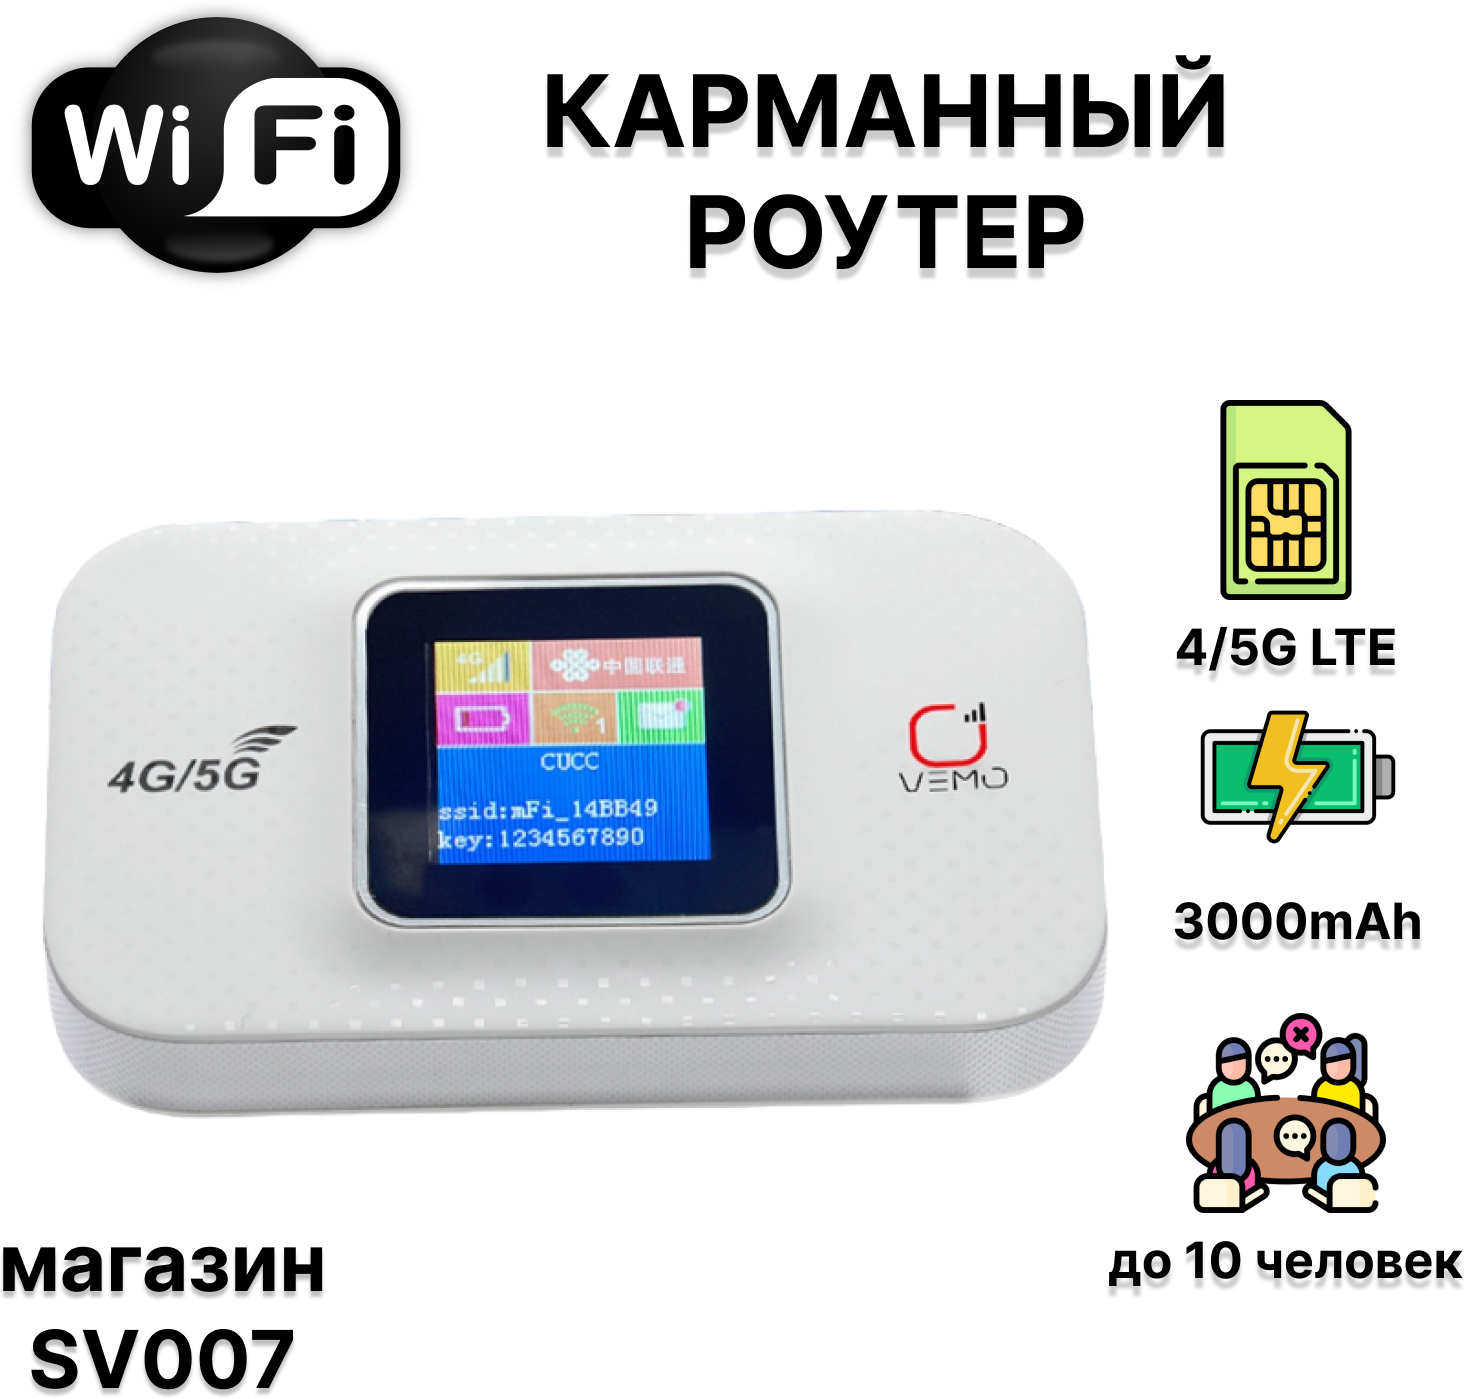 Wi Fi модем с сим картой для раздачи интернета, карманный переносной роутер с sim 4G/5G LTE, встроенный аккумулятор 3000mAh